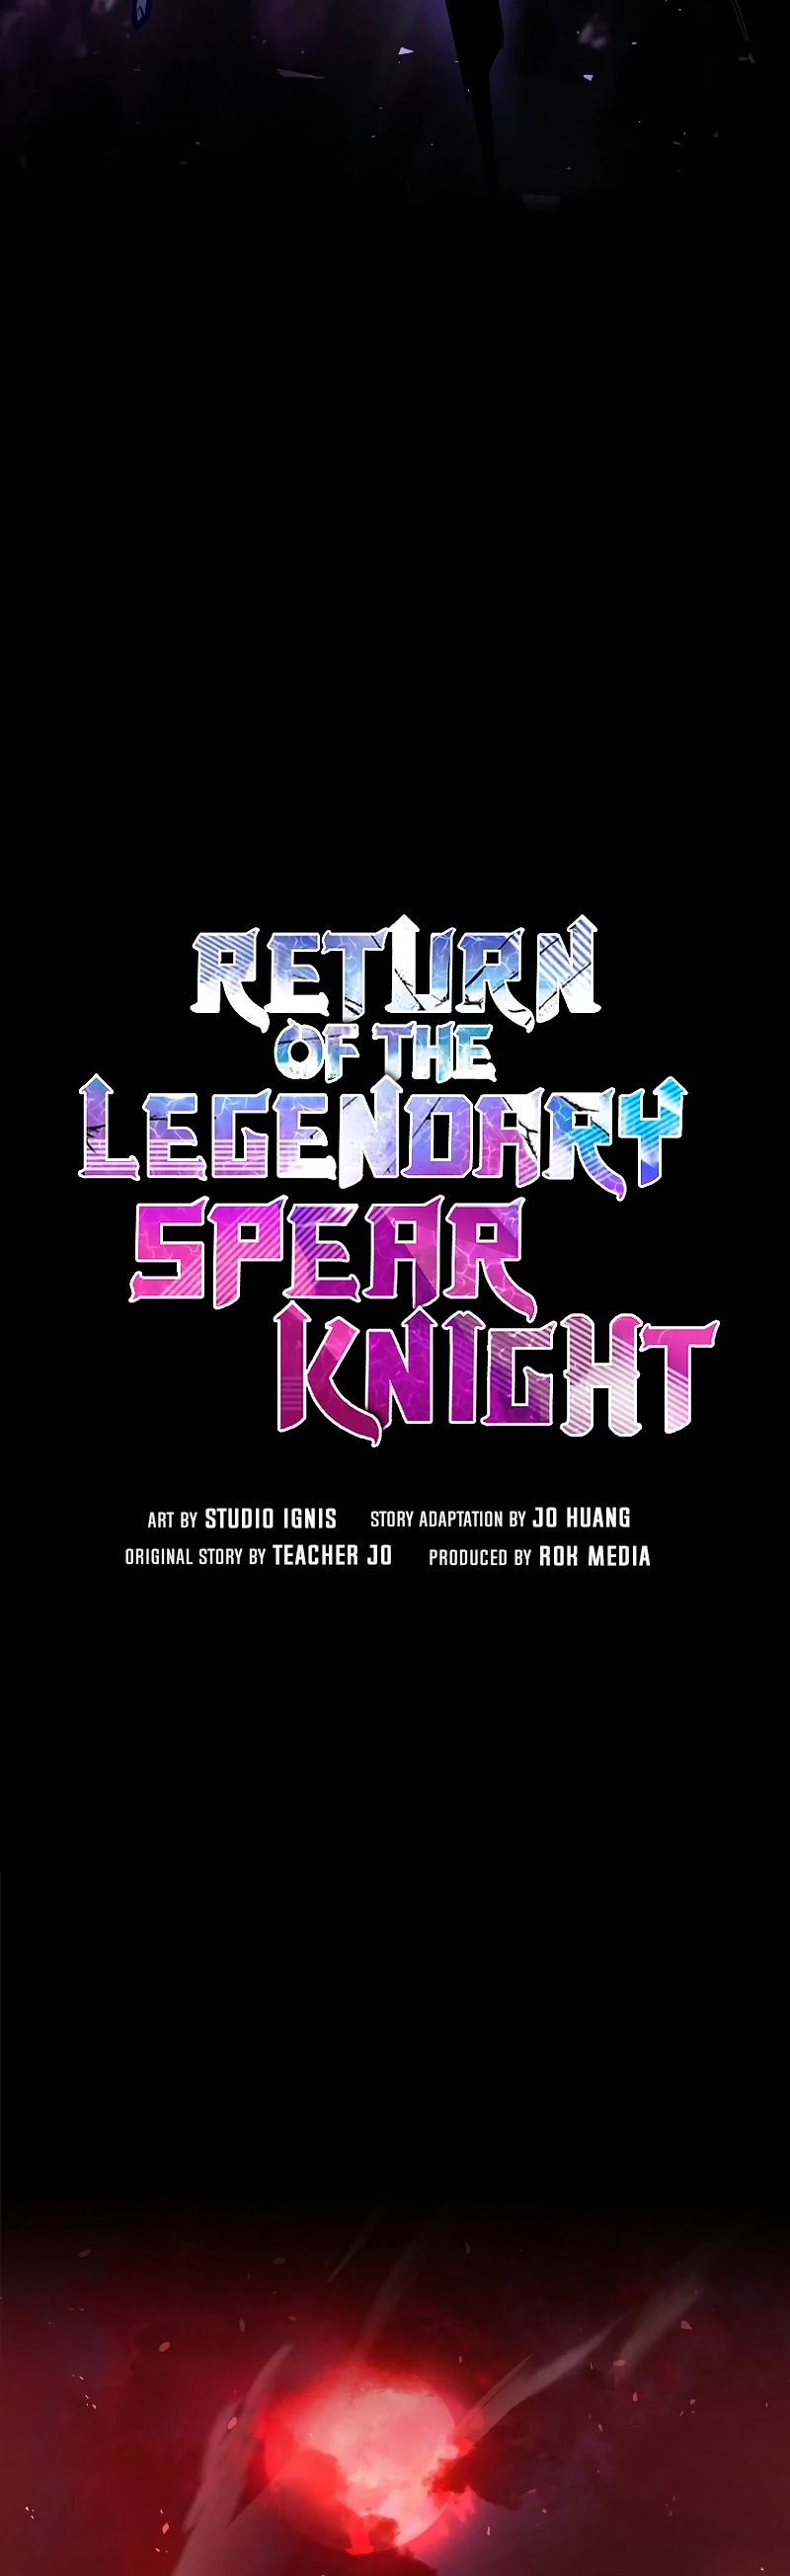 Return of the Legendary Spear Knight 19 05